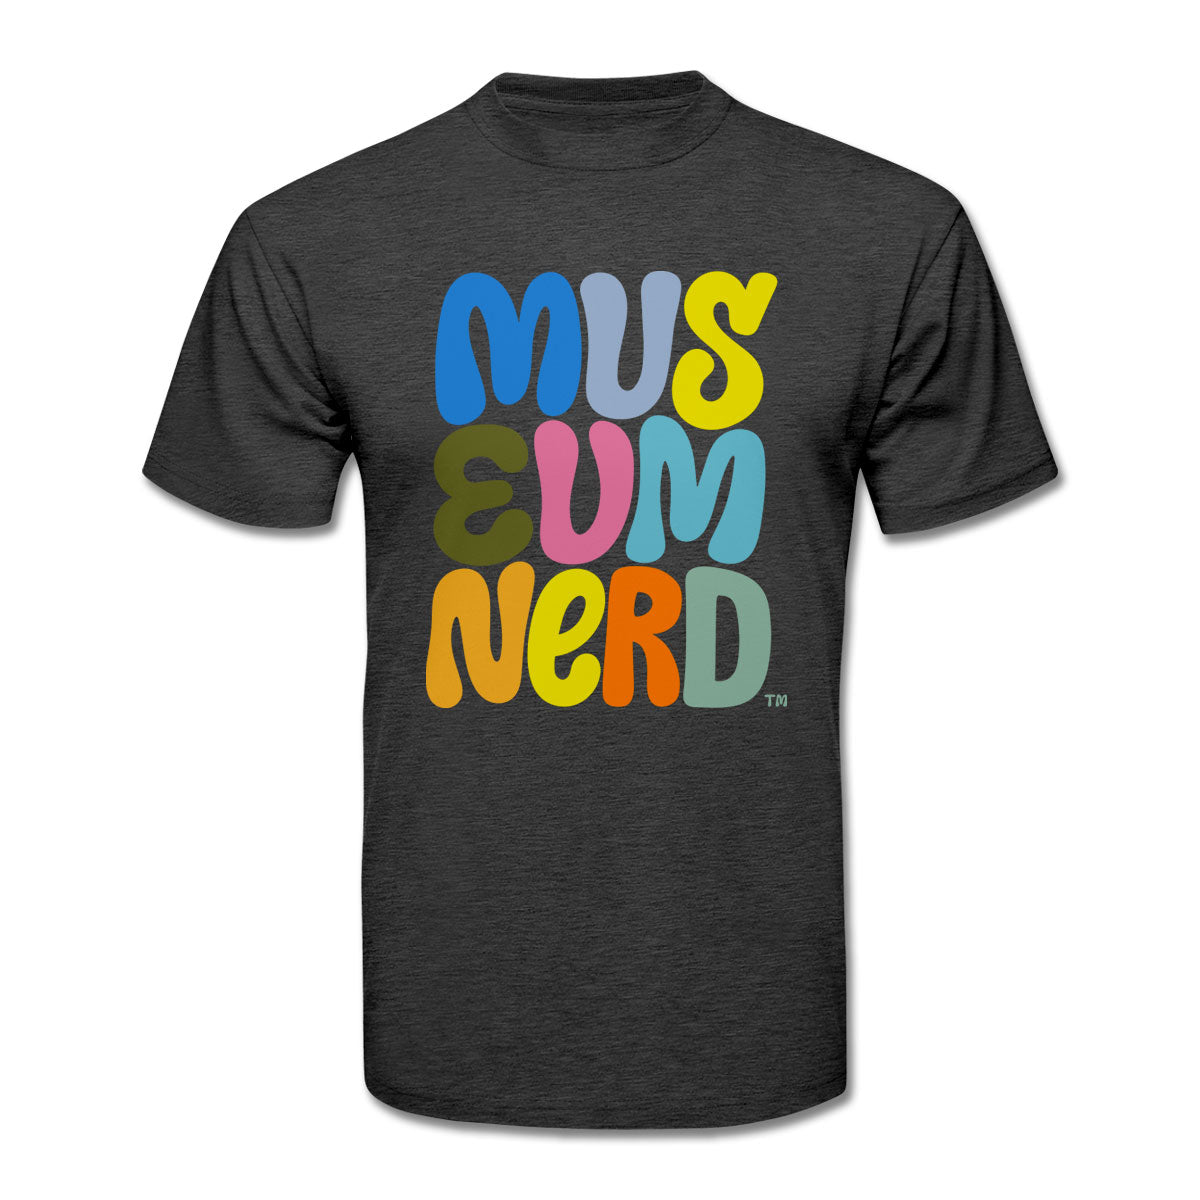 Museum Nerd T-Shirt